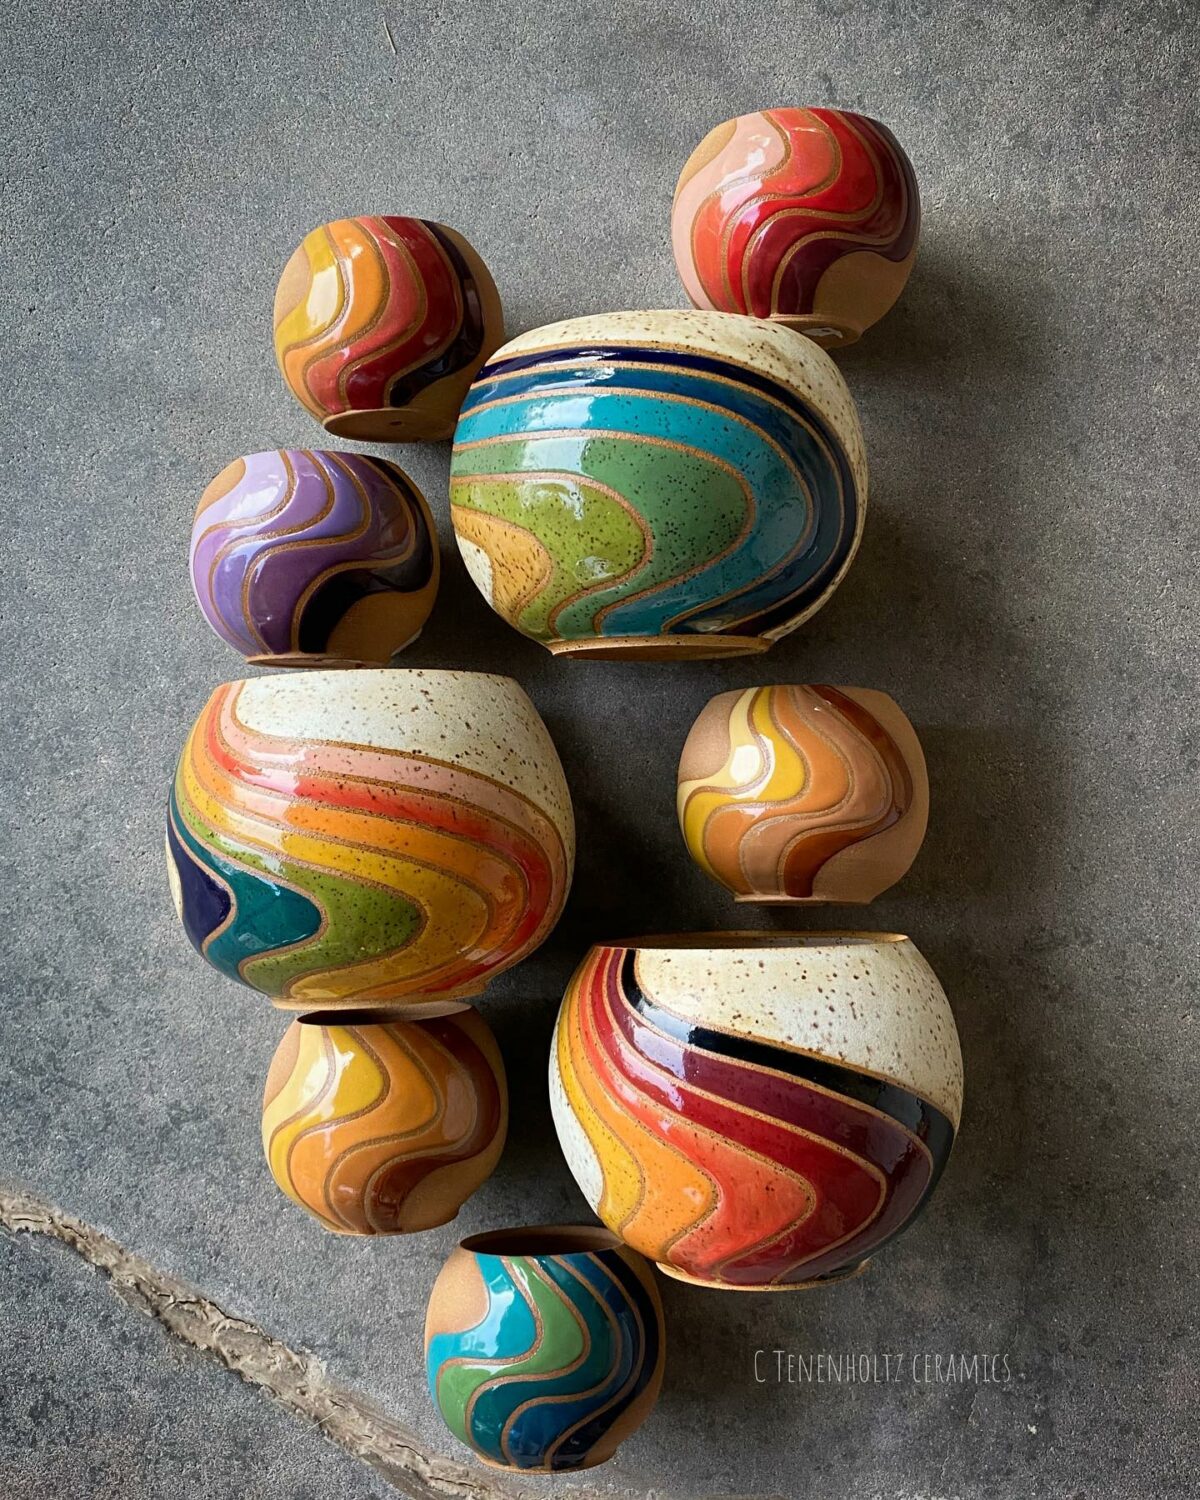 Rainbow Ceramics Gorgeous Multicolored Ceramic Pieces By Christine Tenenholtz (2)